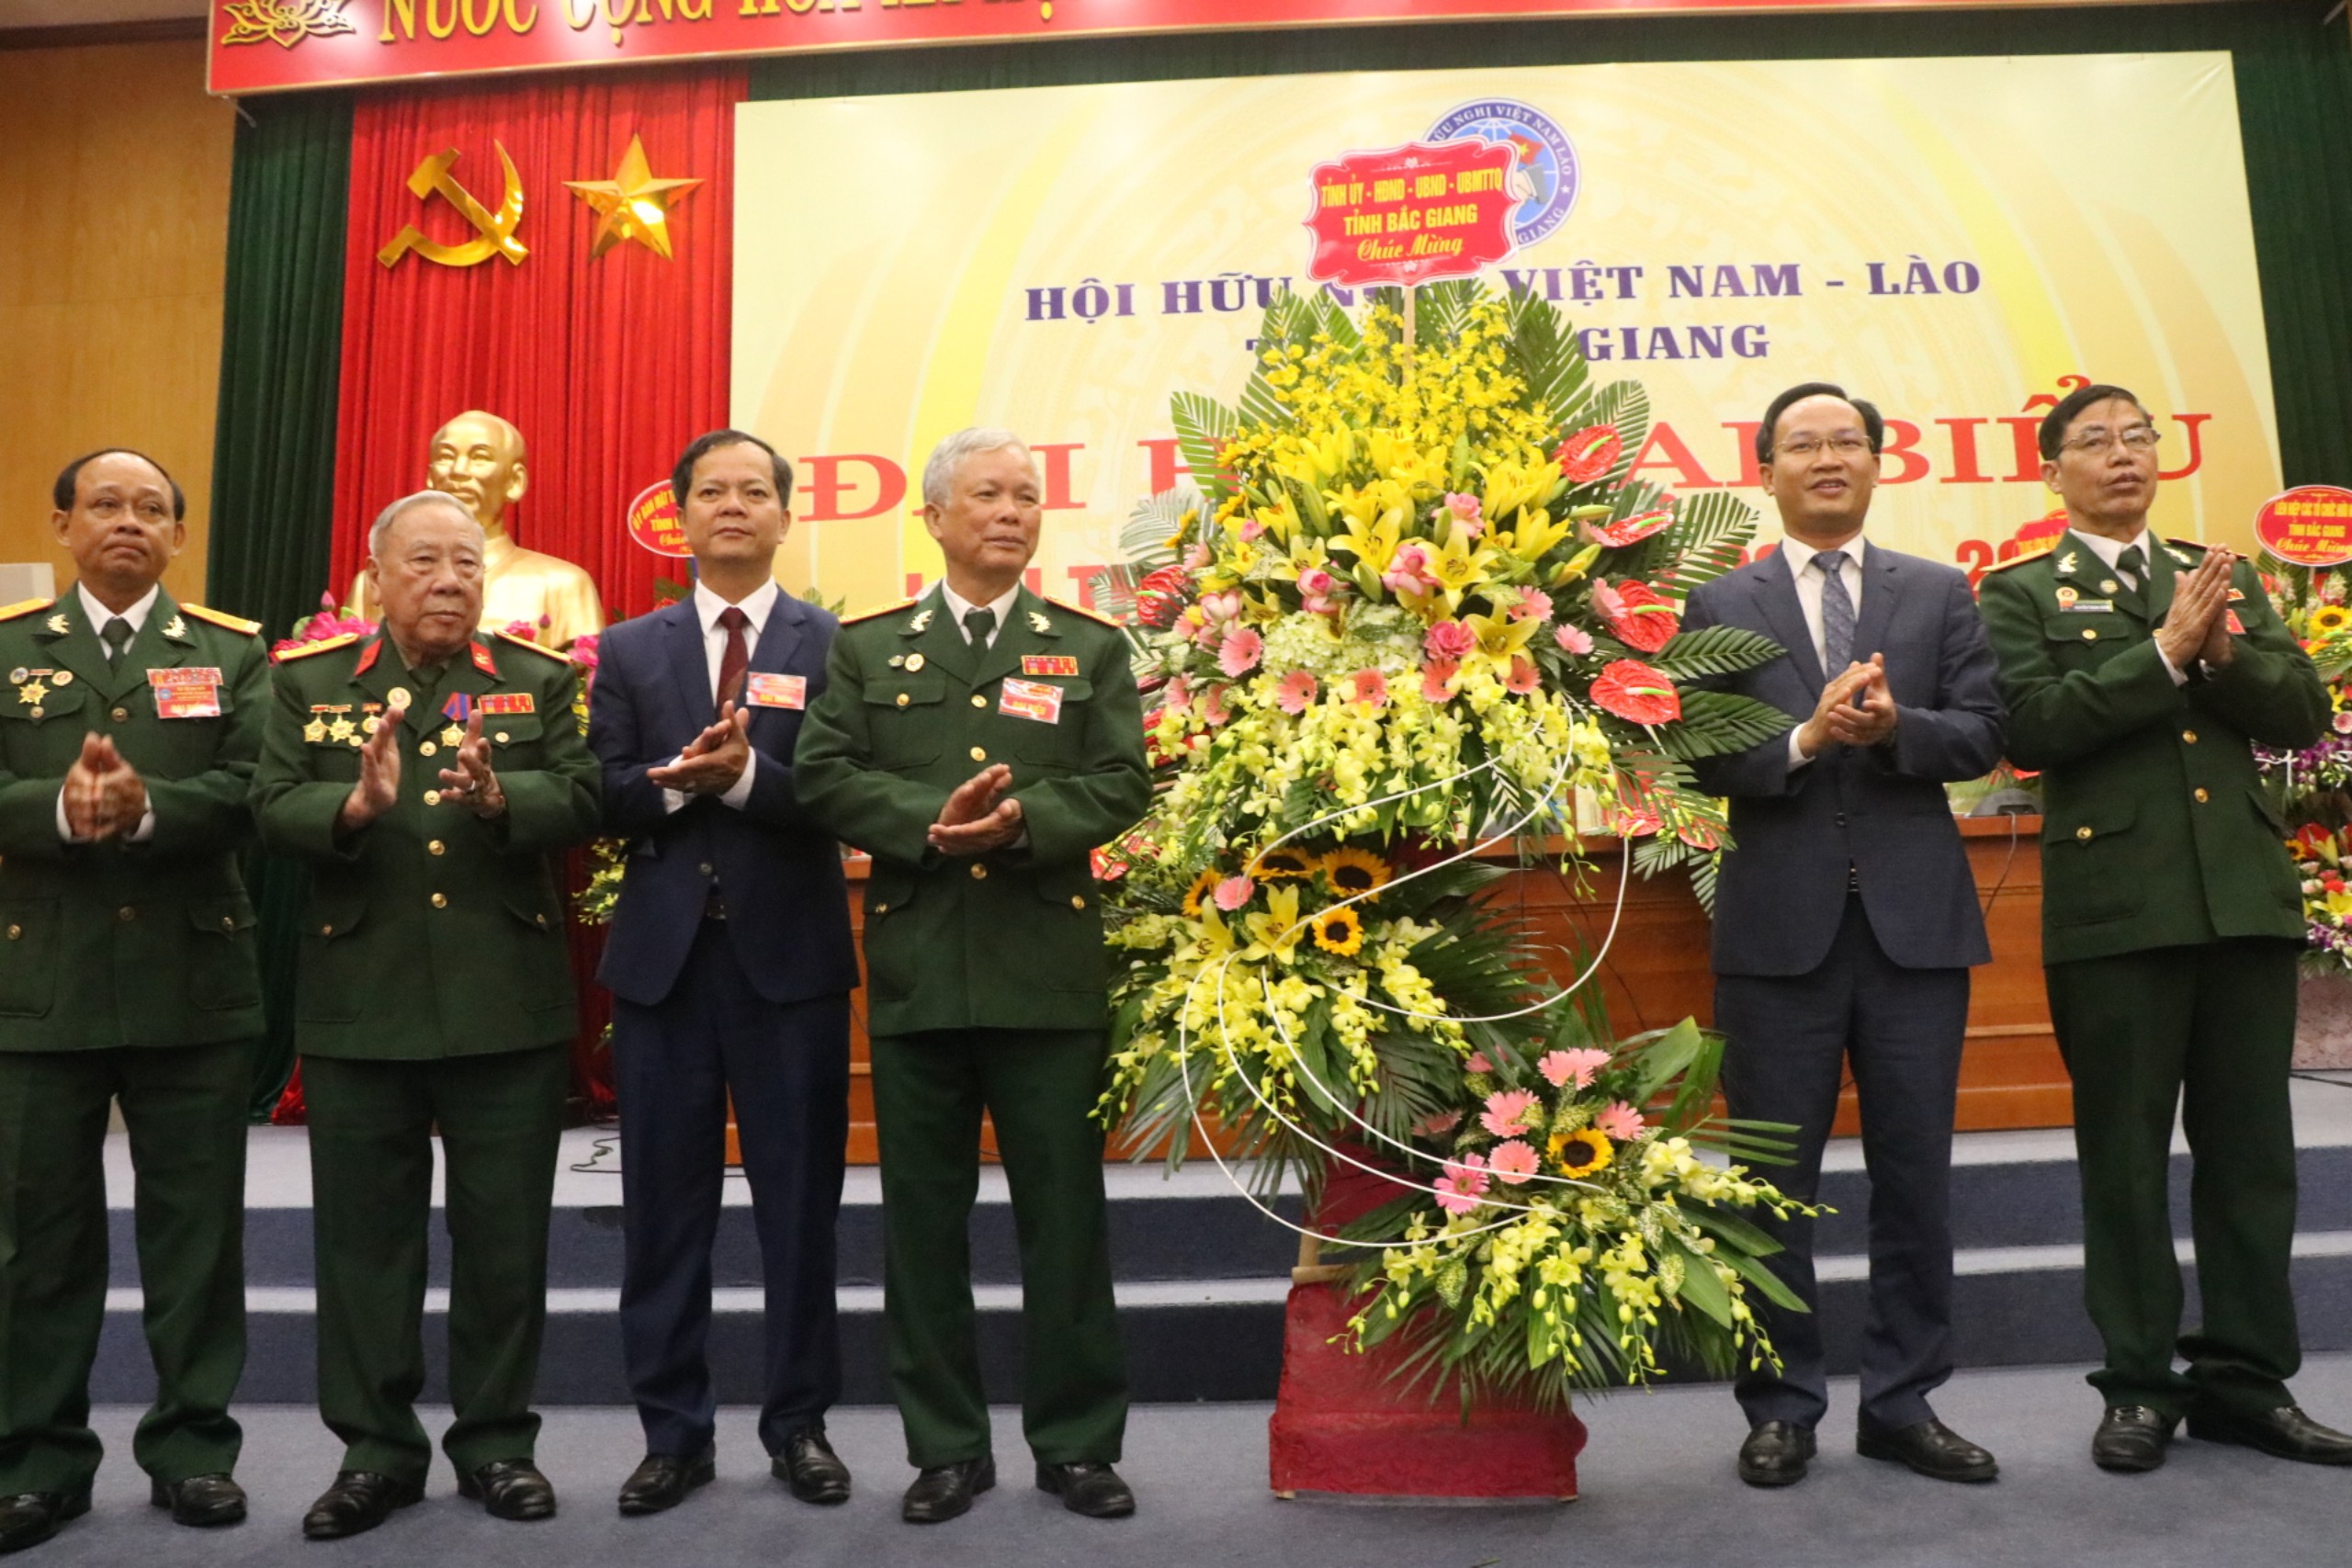 Hội Hữu nghị Việt Nam - Lào tỉnh Bắc Giang tổ chức Đại hội lần thứ IV, nhiệm kỳ 2020-2025